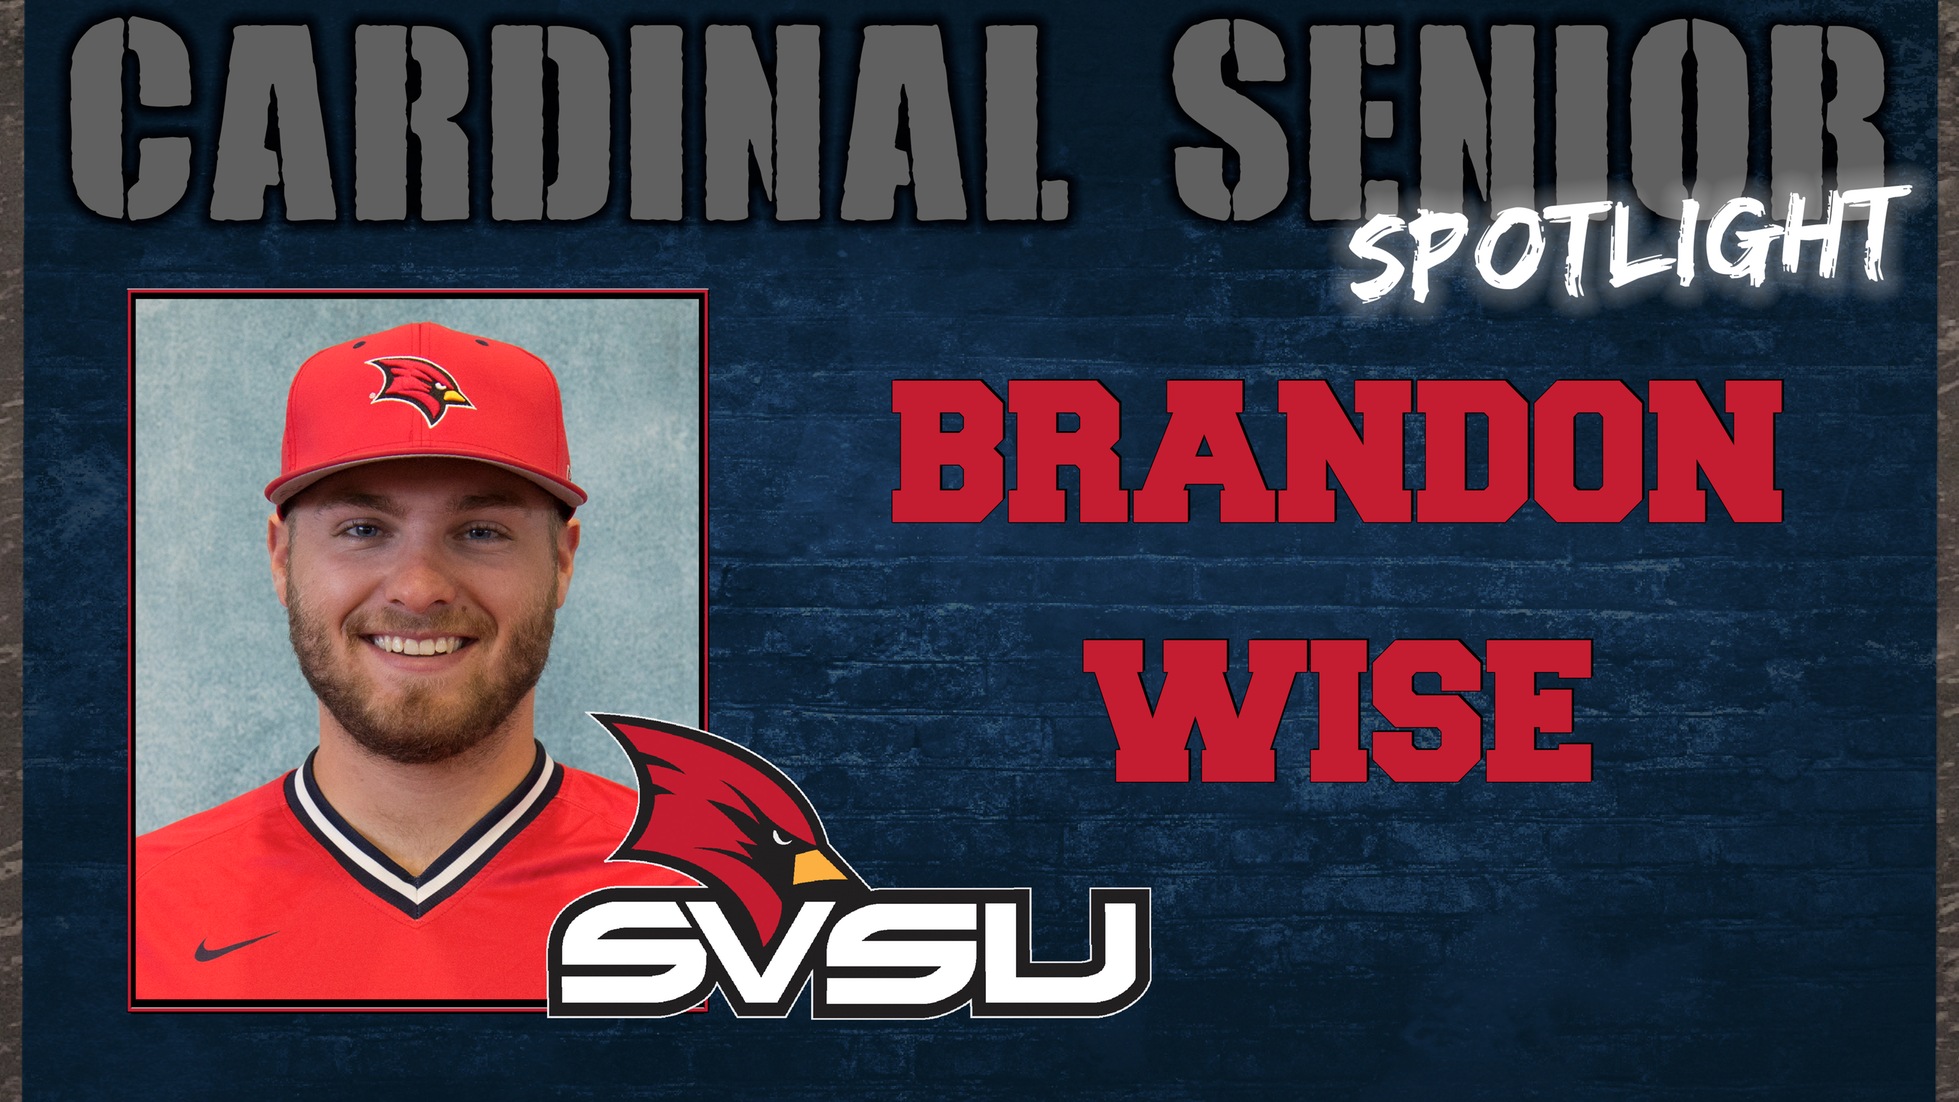 SVSU Cardinal Senior Spotlight - Brandon Wise